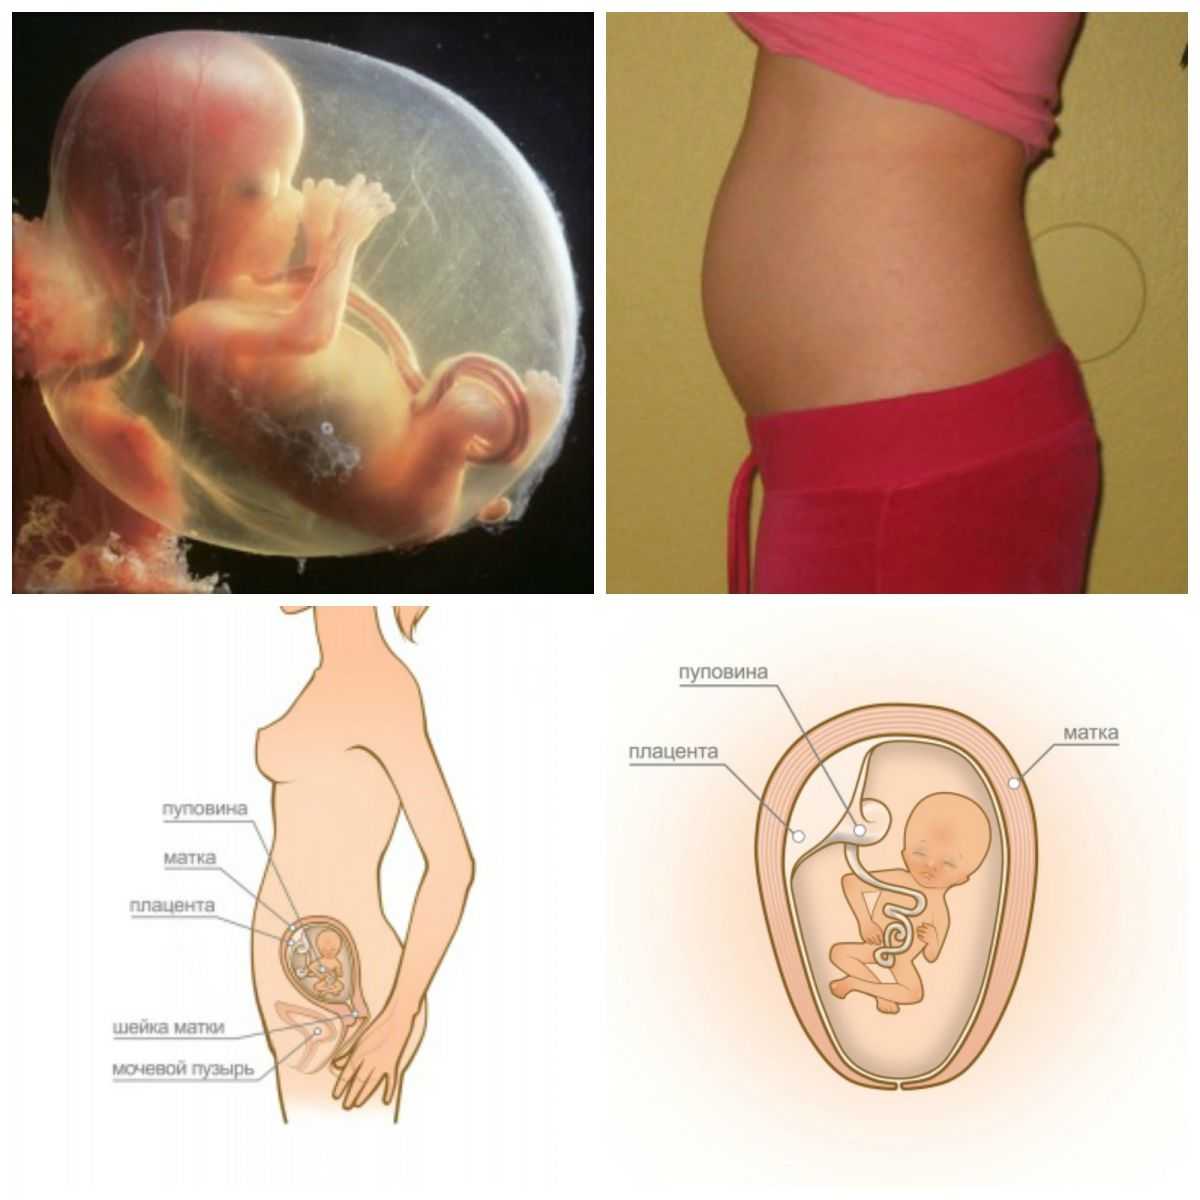 13 неделя беременности: что происходит, размер плода, пол ребенка, фото живота